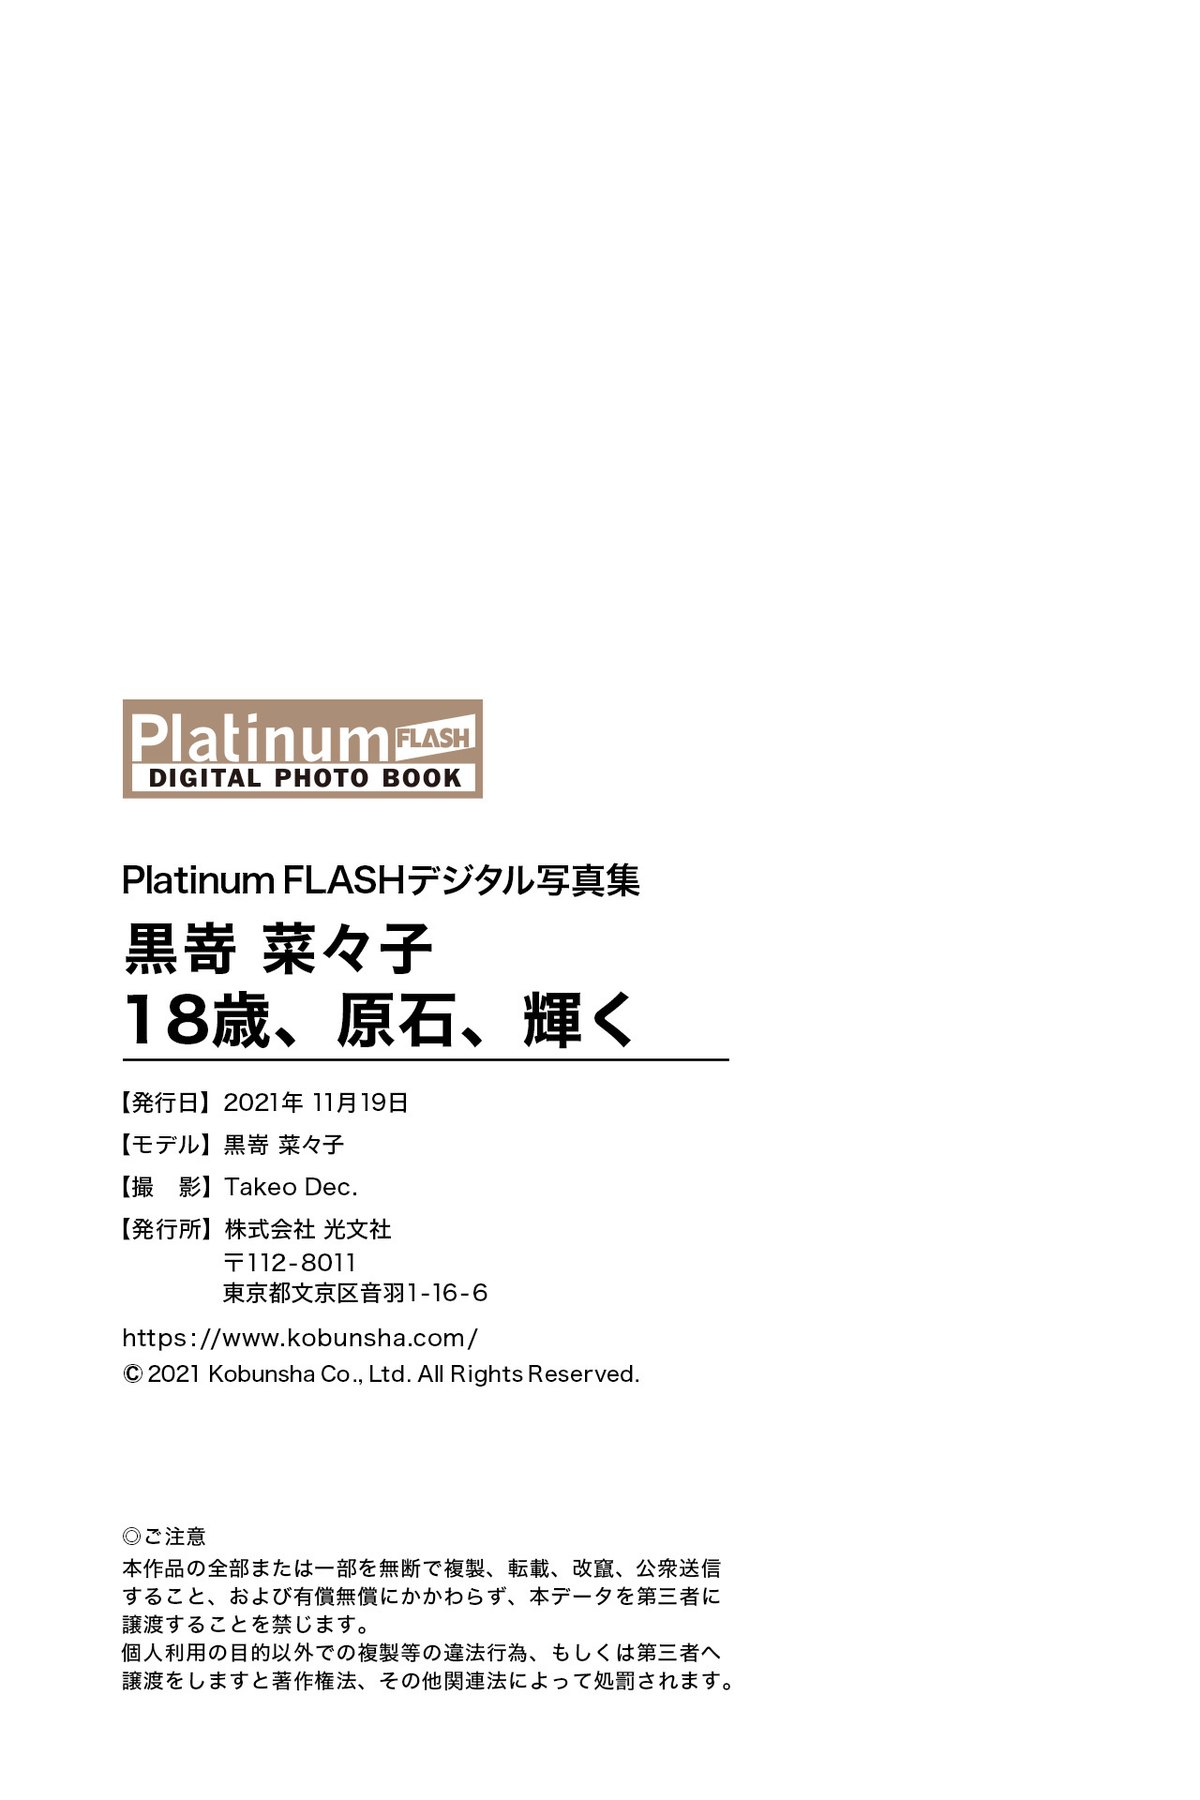 Platinum FLASH Photobook 2021 11 19 Nanako Kurosaki 黒嵜菜々子 18 Years Old 0068 0659400484.jpg